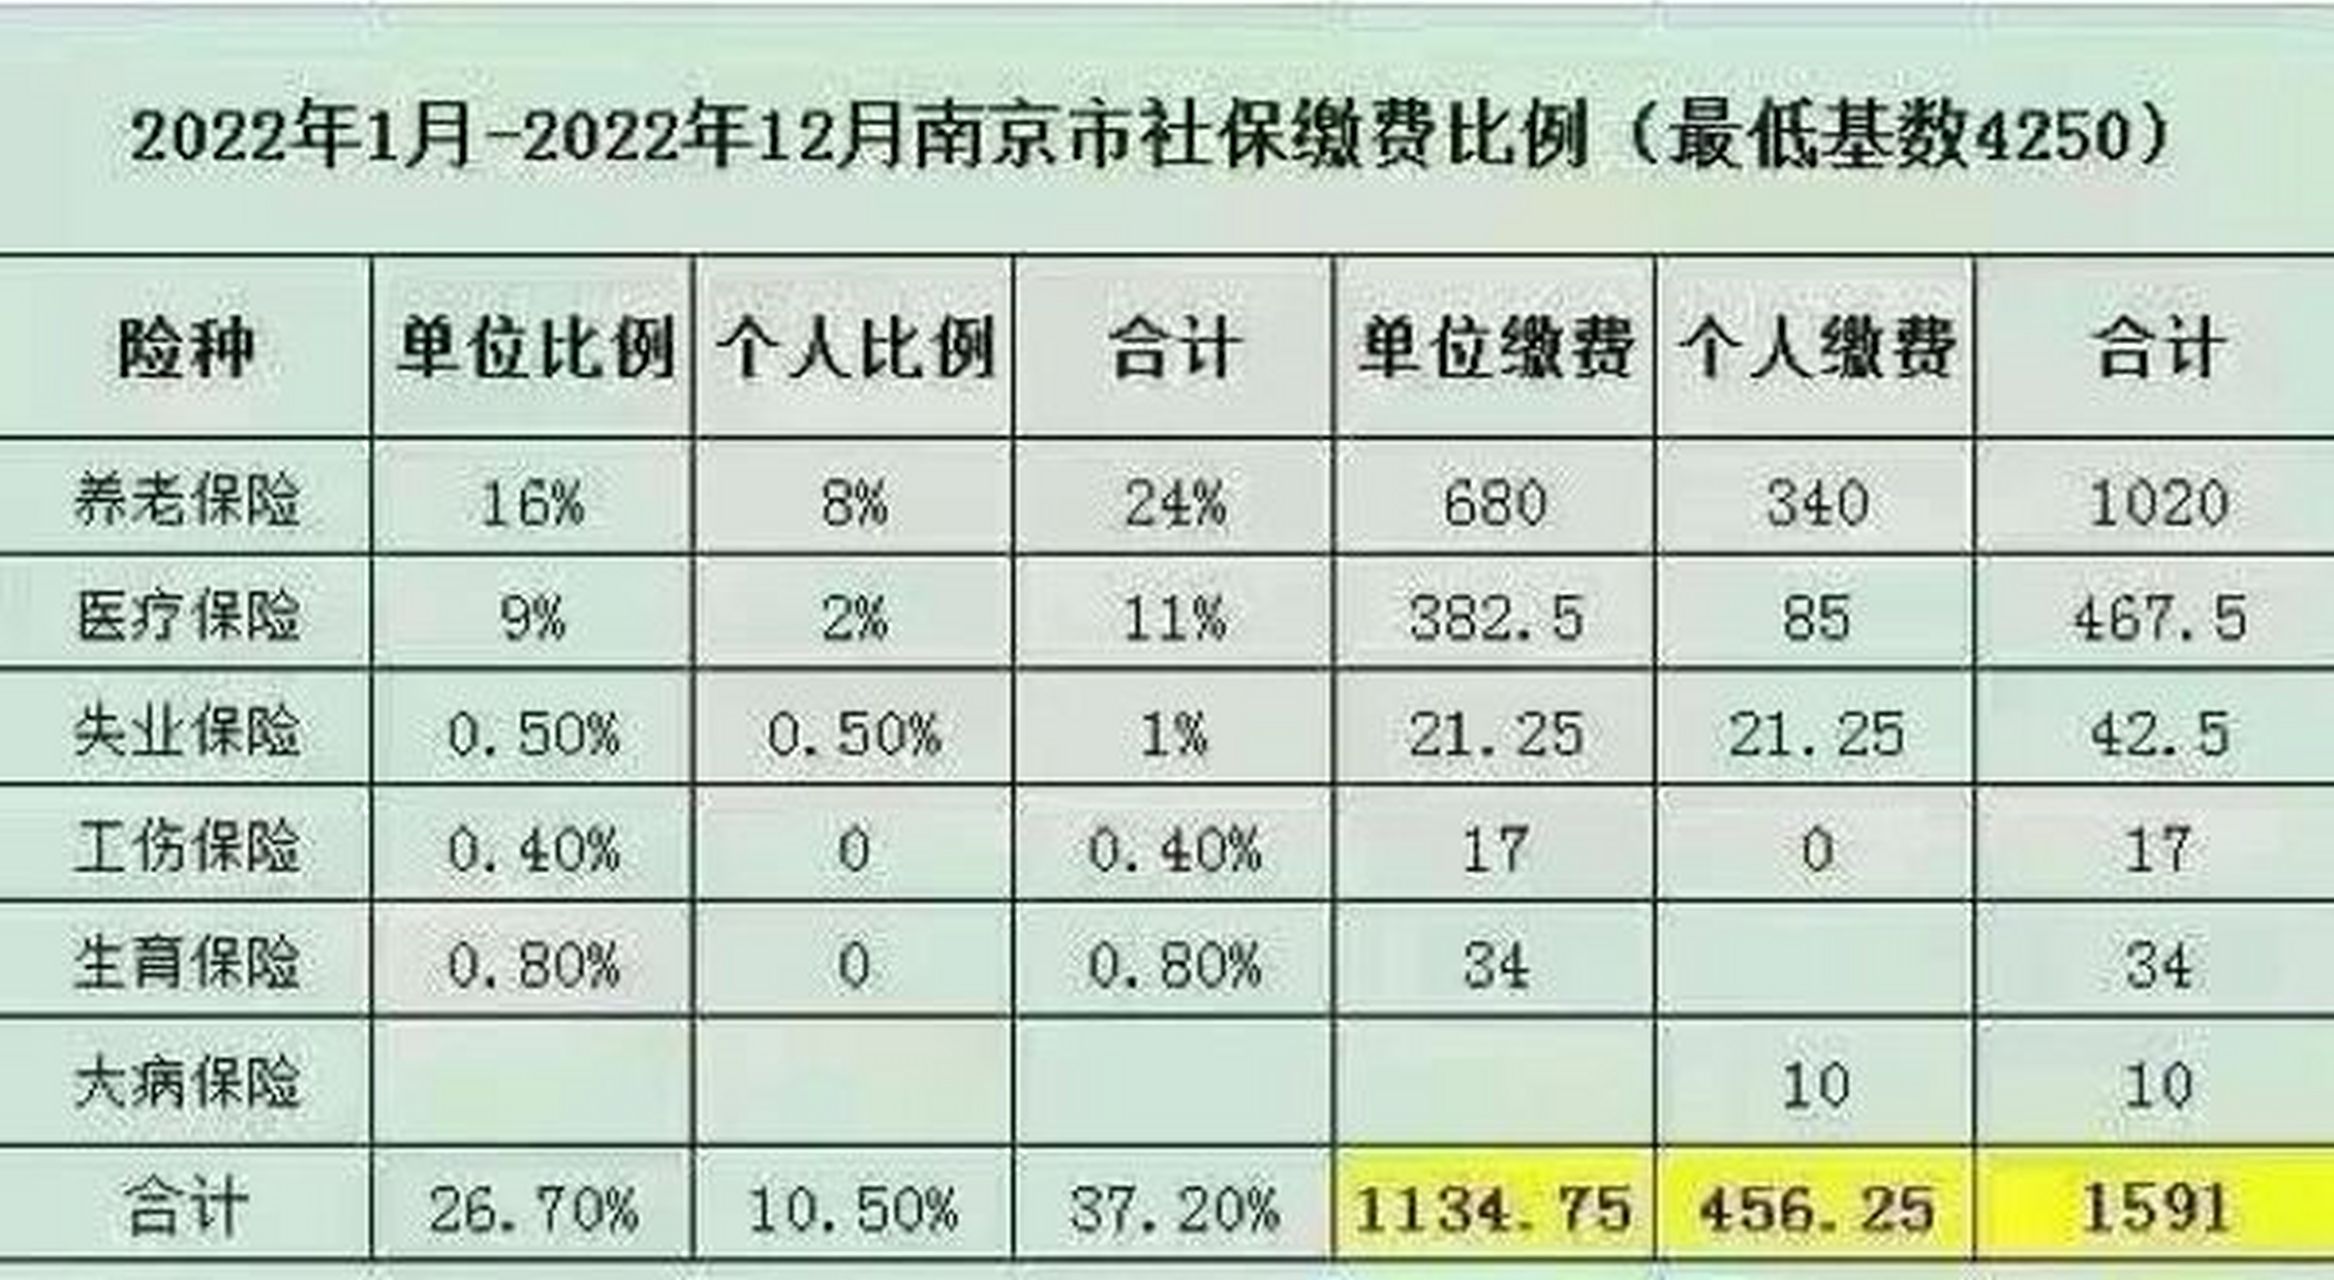 2022年南京市最低基数社保缴费明细表 社保基数不算的在调整上涨